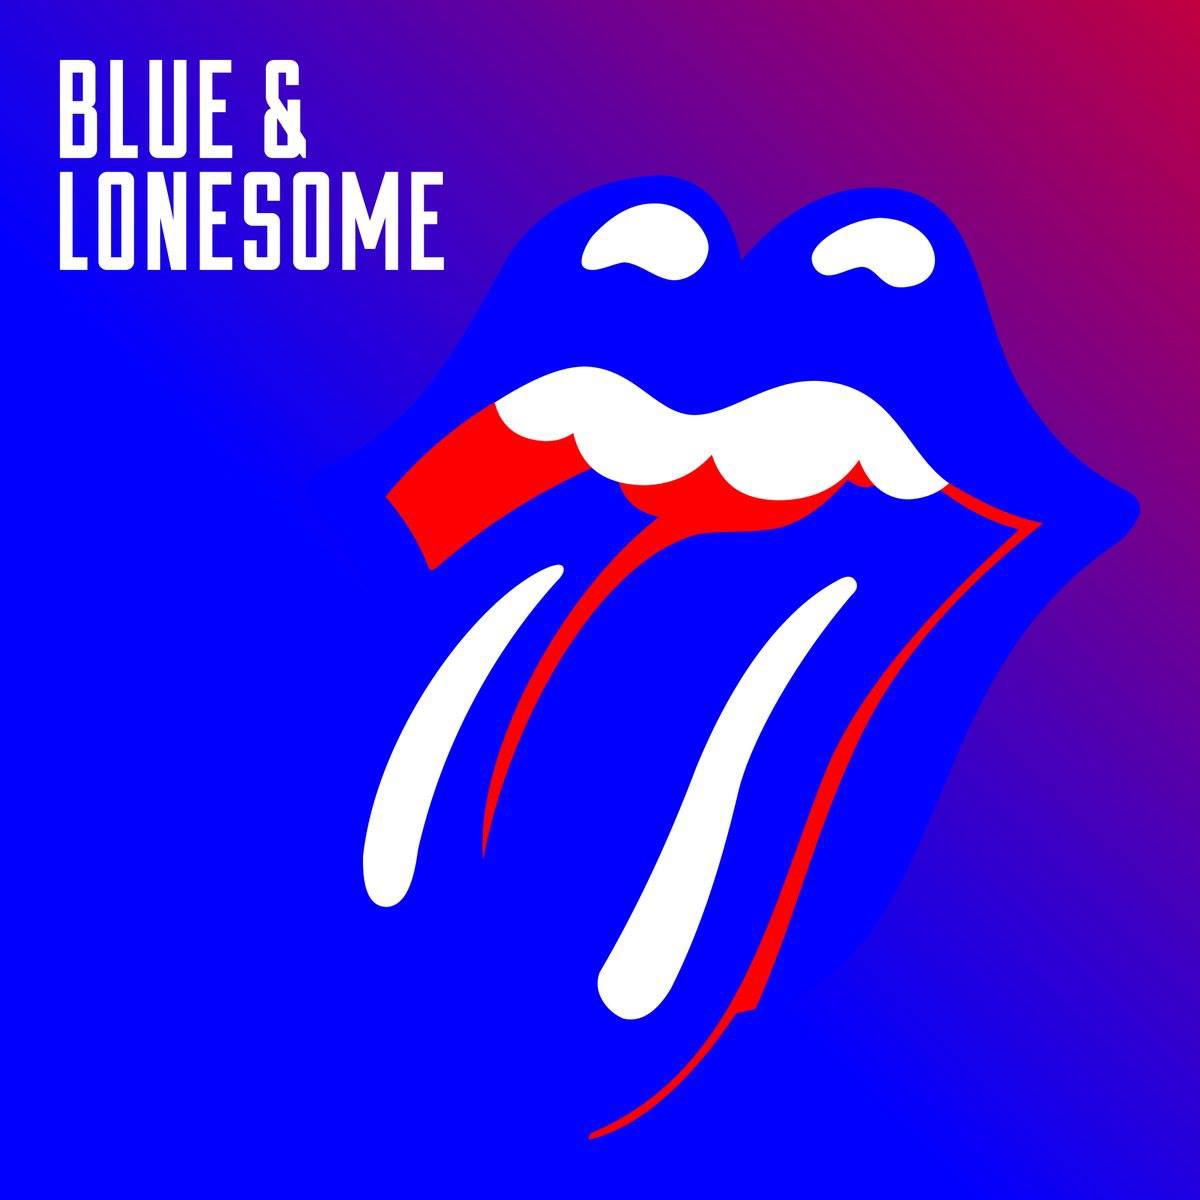 The Rolling Stones: Blue & lonesome, la portada del disco